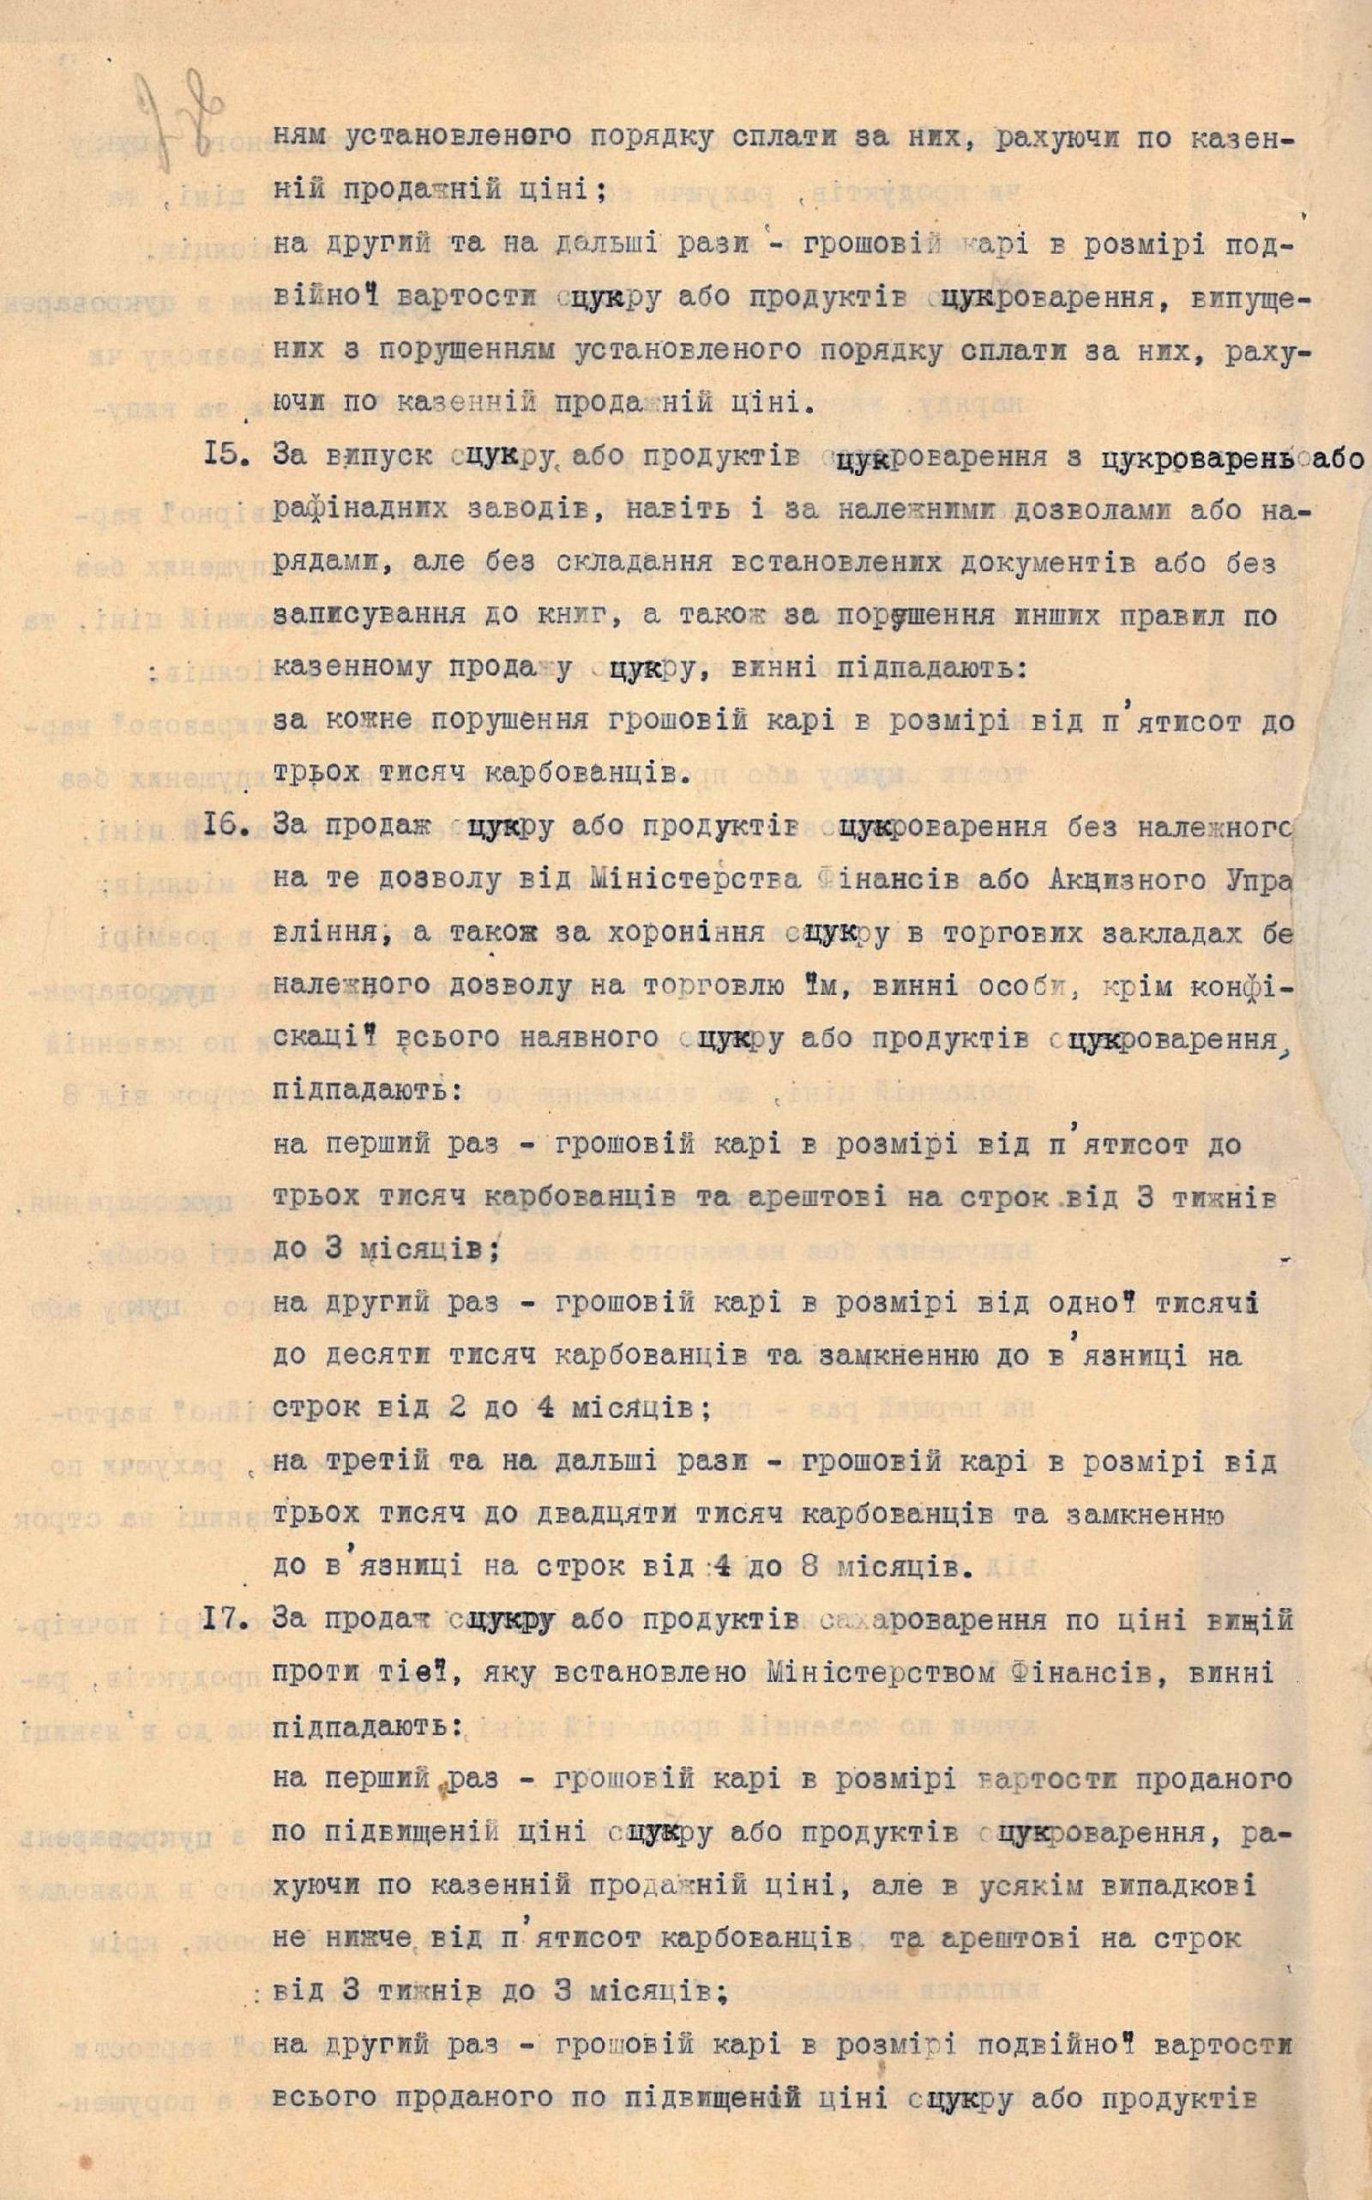 Закон Української Держави про деякі зміни та доповнення до існуючих законів про продаж цукру. 4 жовтня 1918 р.